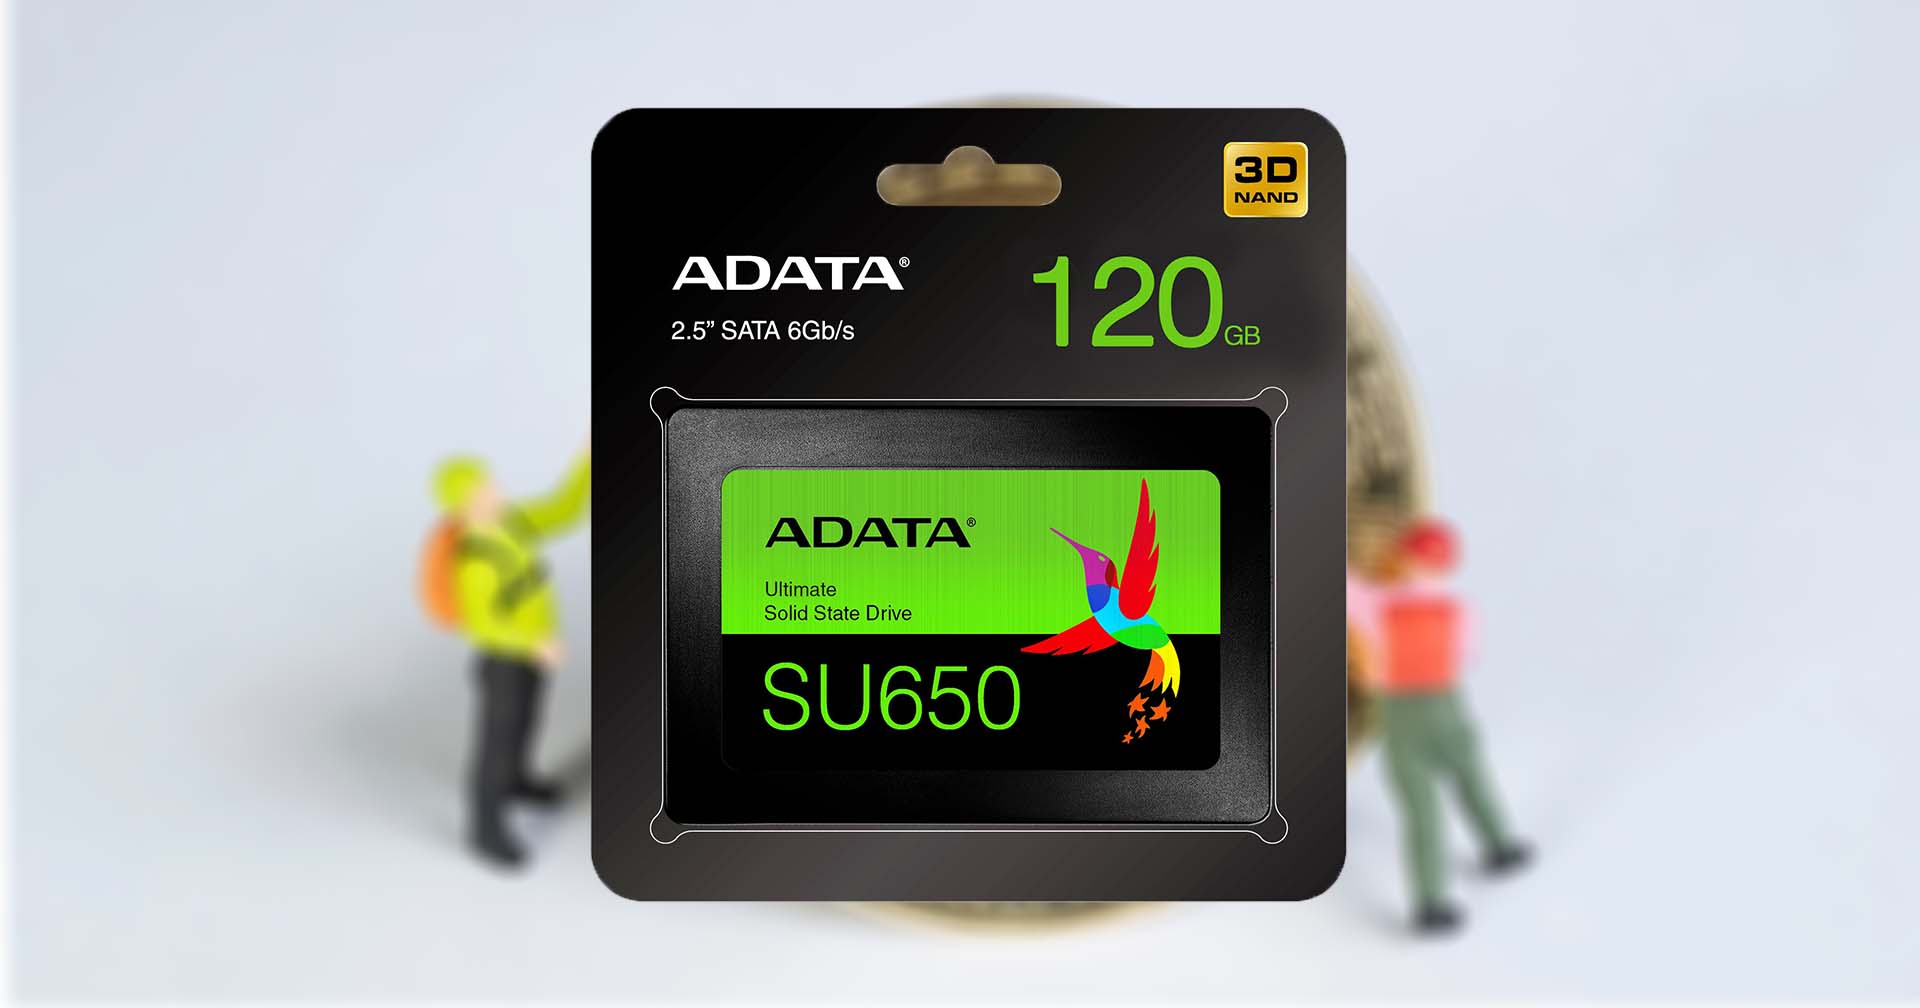 นักขุดแห่ซื้อ SSD ขนาดใหญ่จาก ADATA คำสั่งซื้อเพิ่มขึ้น 500